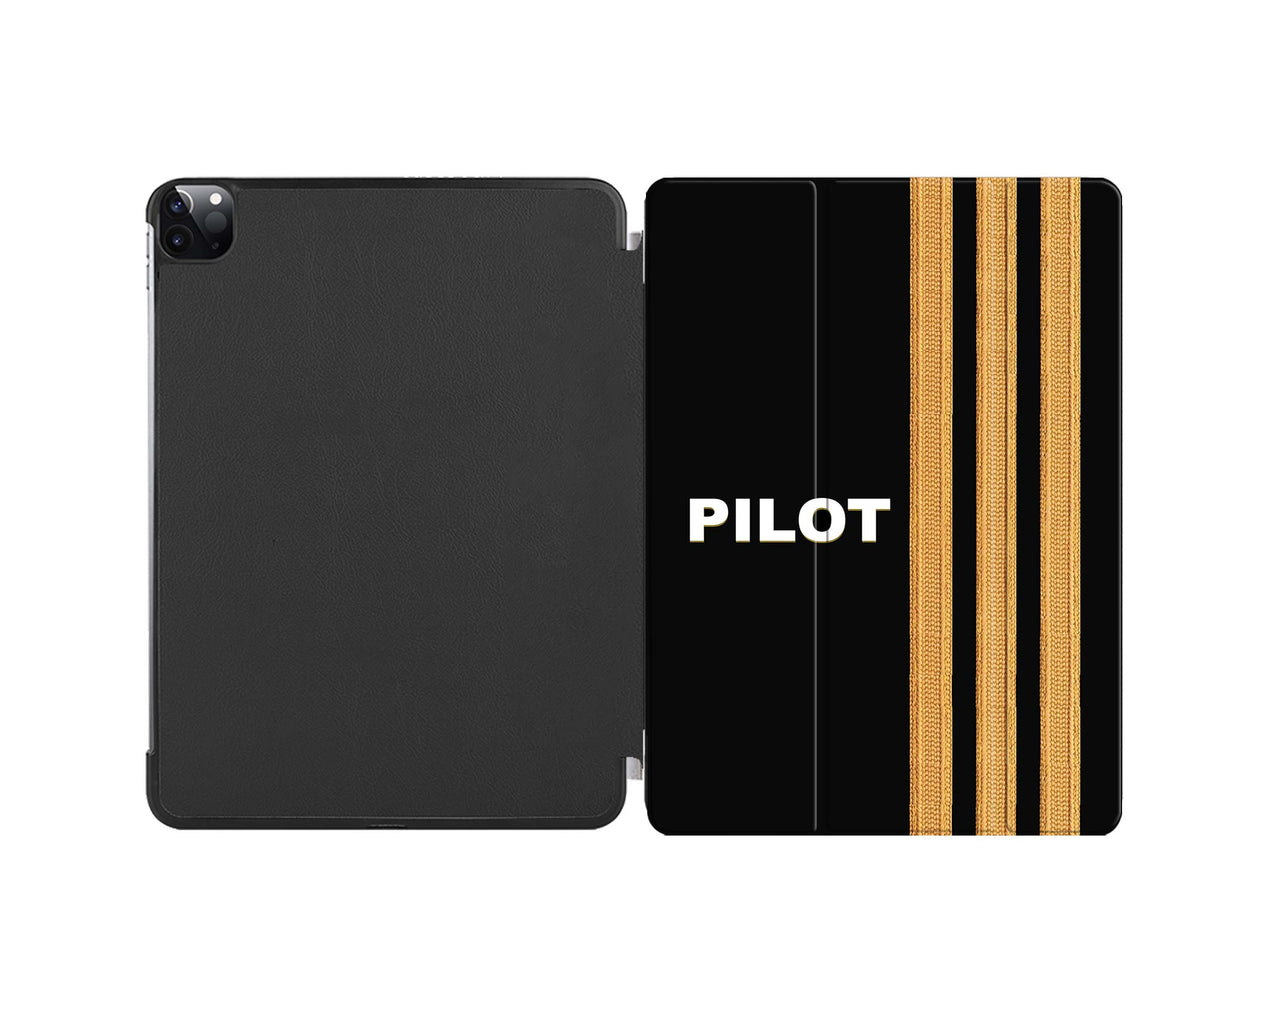 Pilot & Epaulettes (3 Lines) Designed iPad Cases